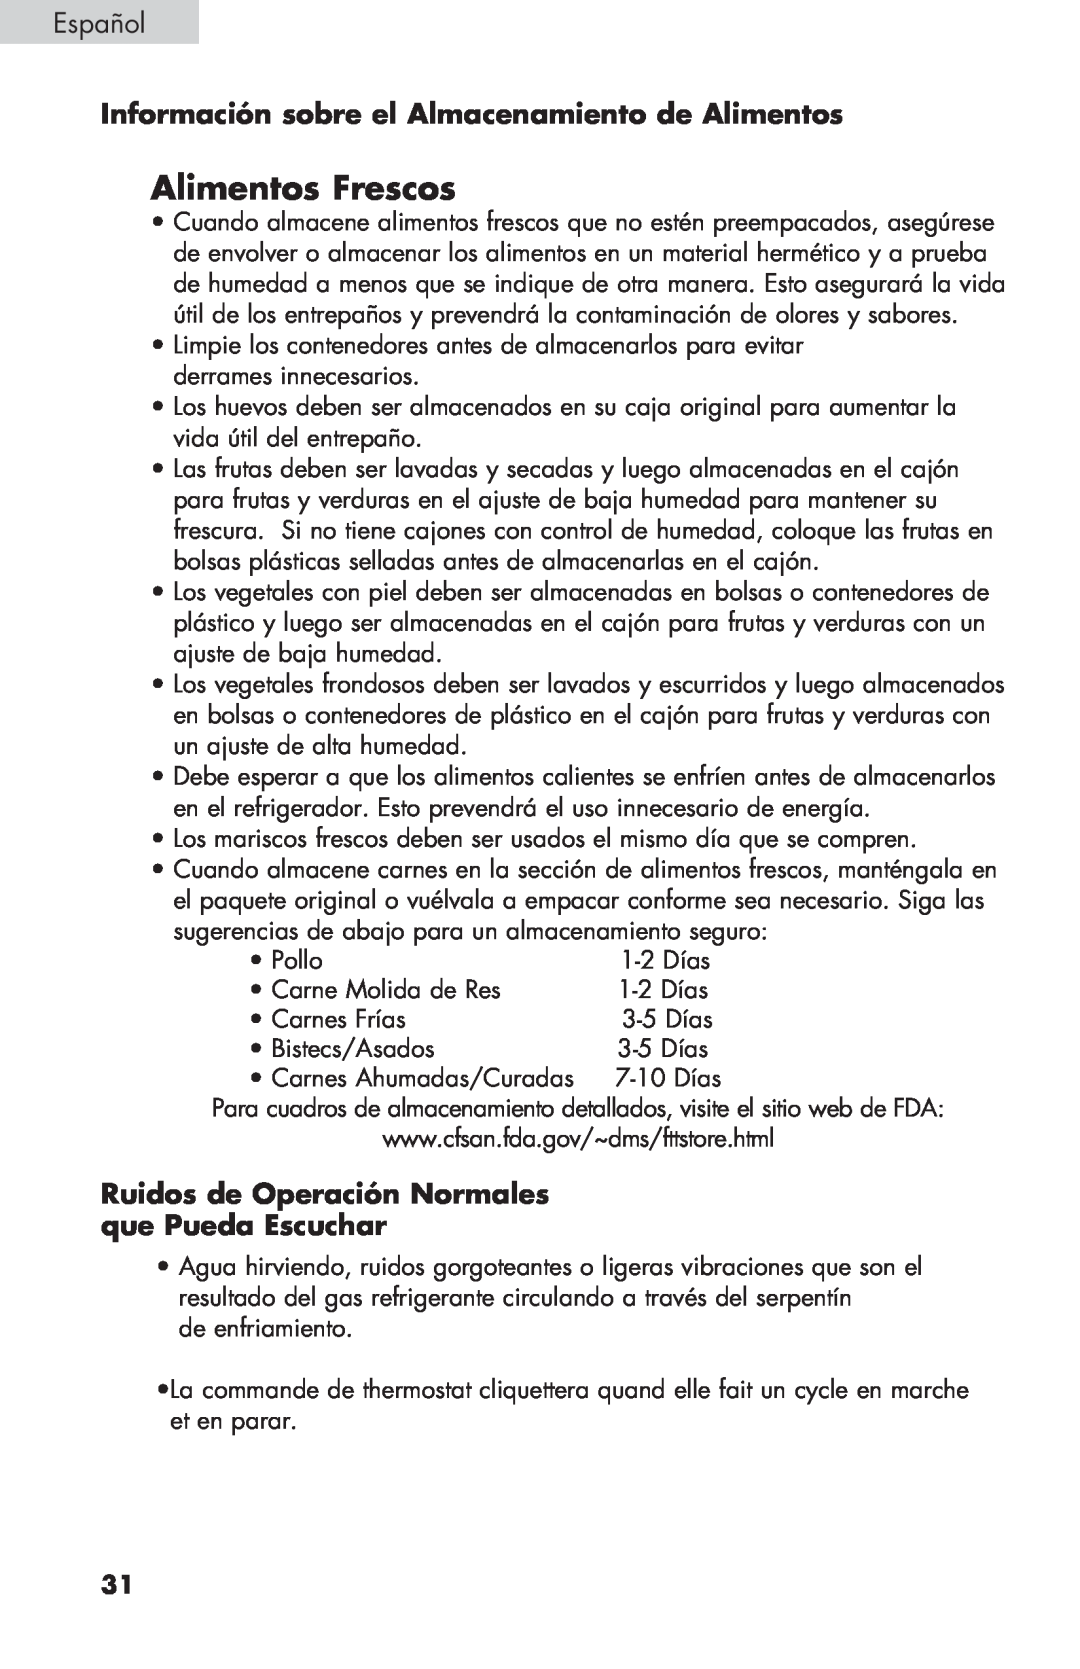 Haier BCF27B manual Alimentos Frescos, Información sobre el Almacenamiento de Alimentos, Español 